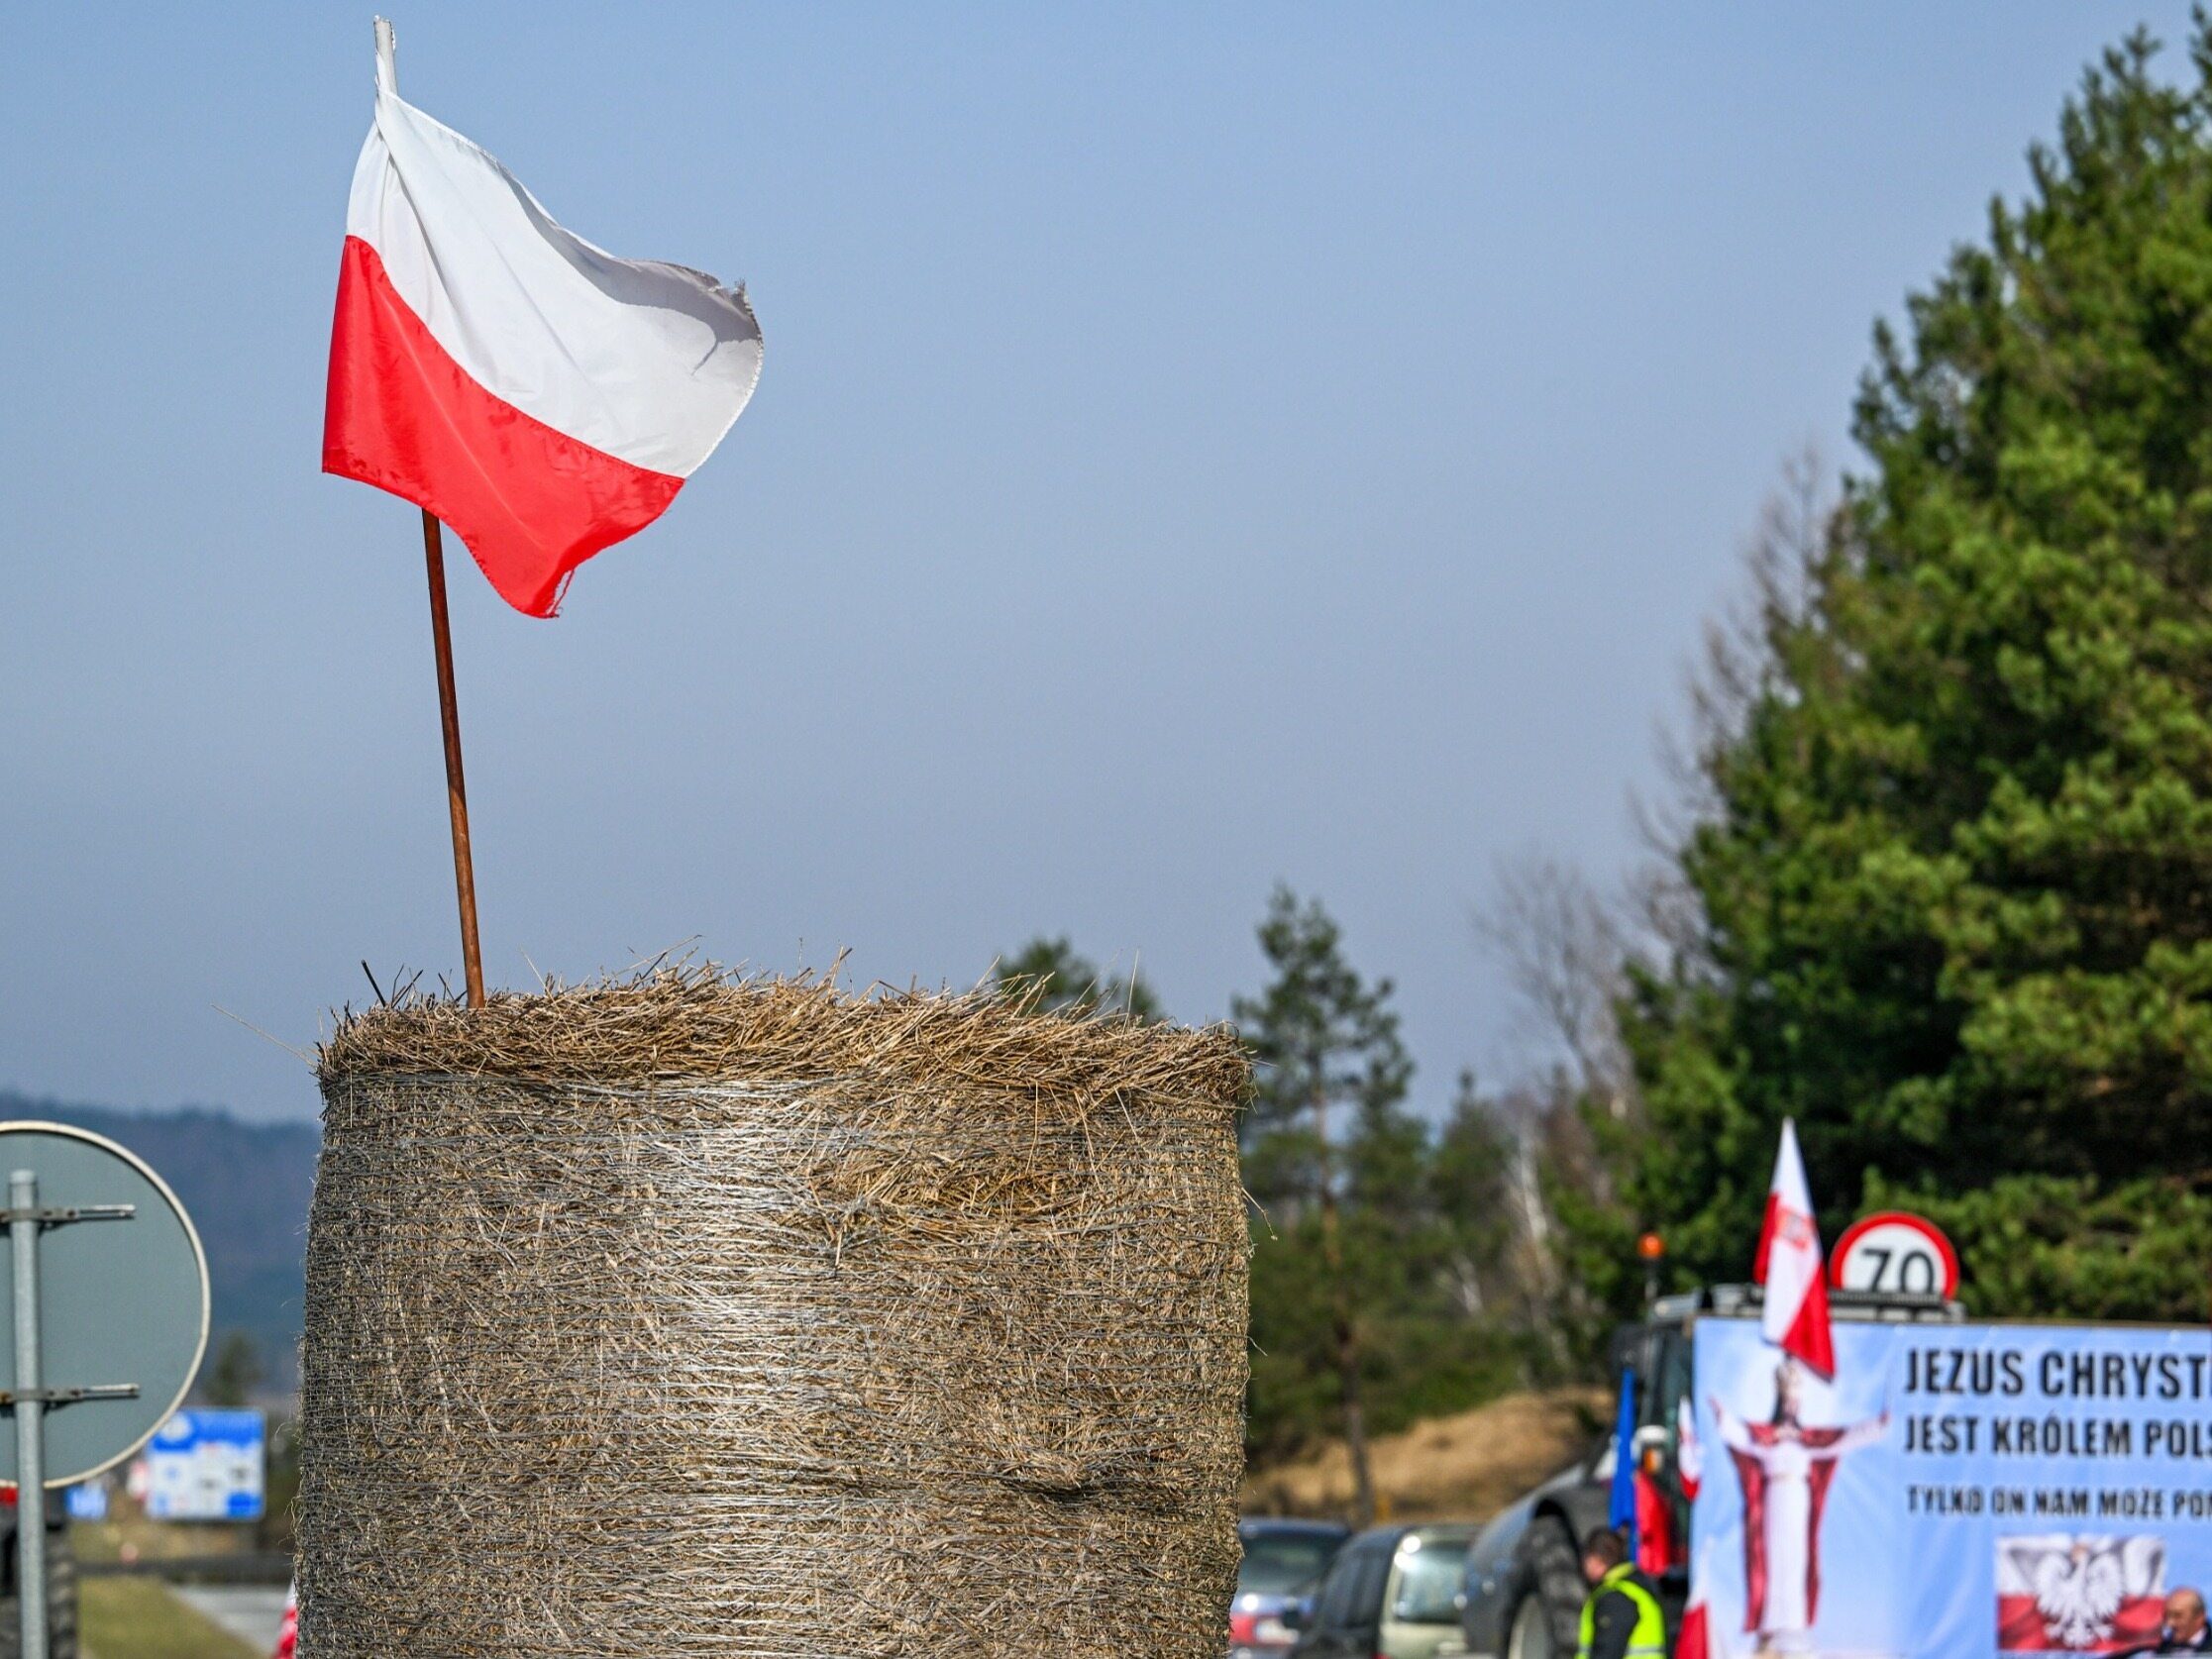 polscy rolnicy stanęli przed dylematem. boją się dwóch rzeczy